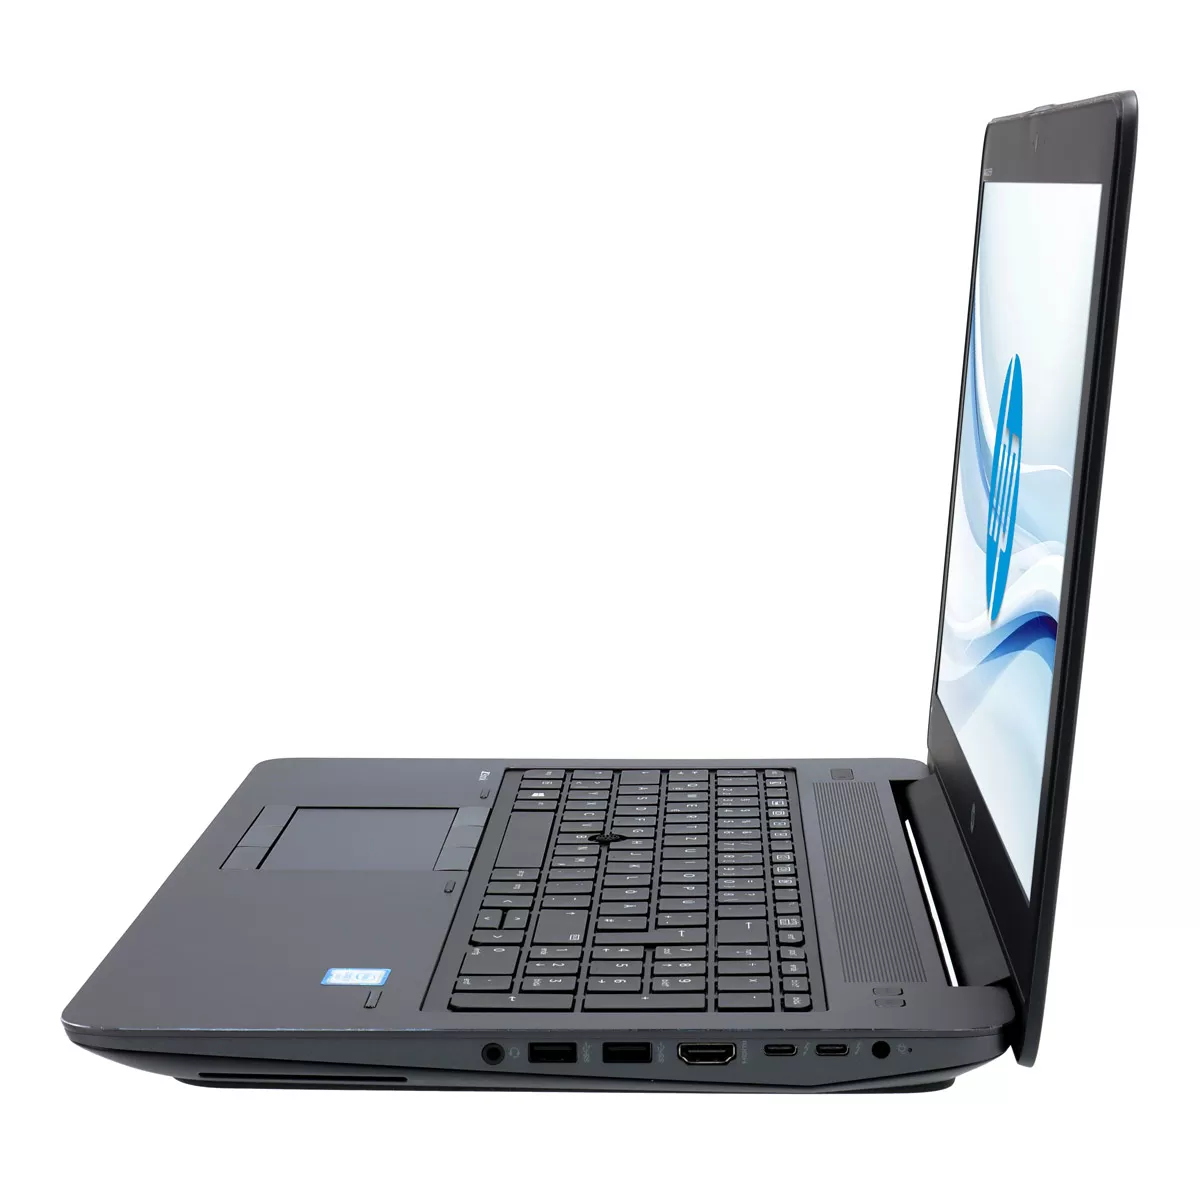 HP ZBook 15 G3 Core i7 6700HQ Full-HD nVidia Quadro M1000M 32 GB 500 GB M.2 SSD Webcam A+